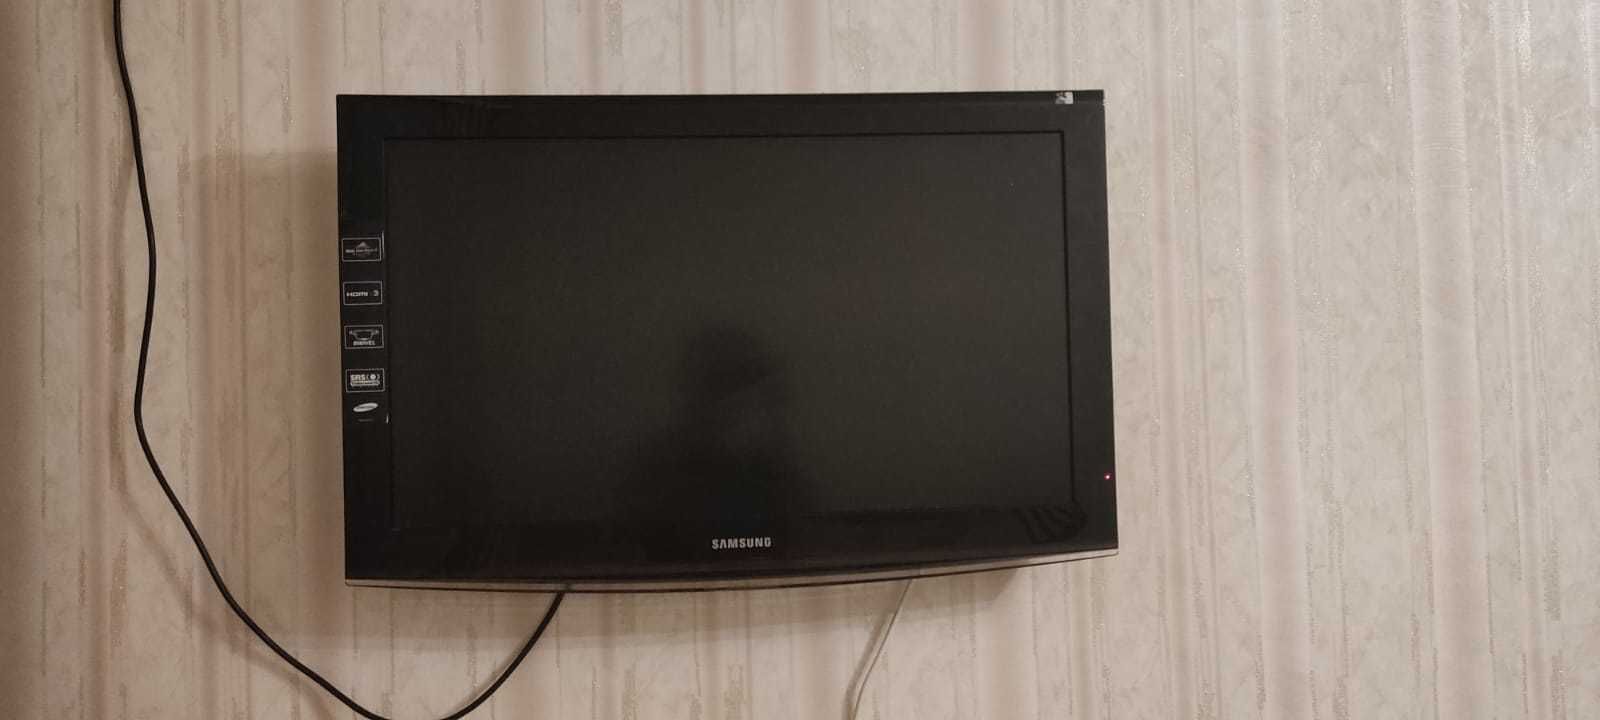 Телевизор Самсунг диагональ  32 дюймов